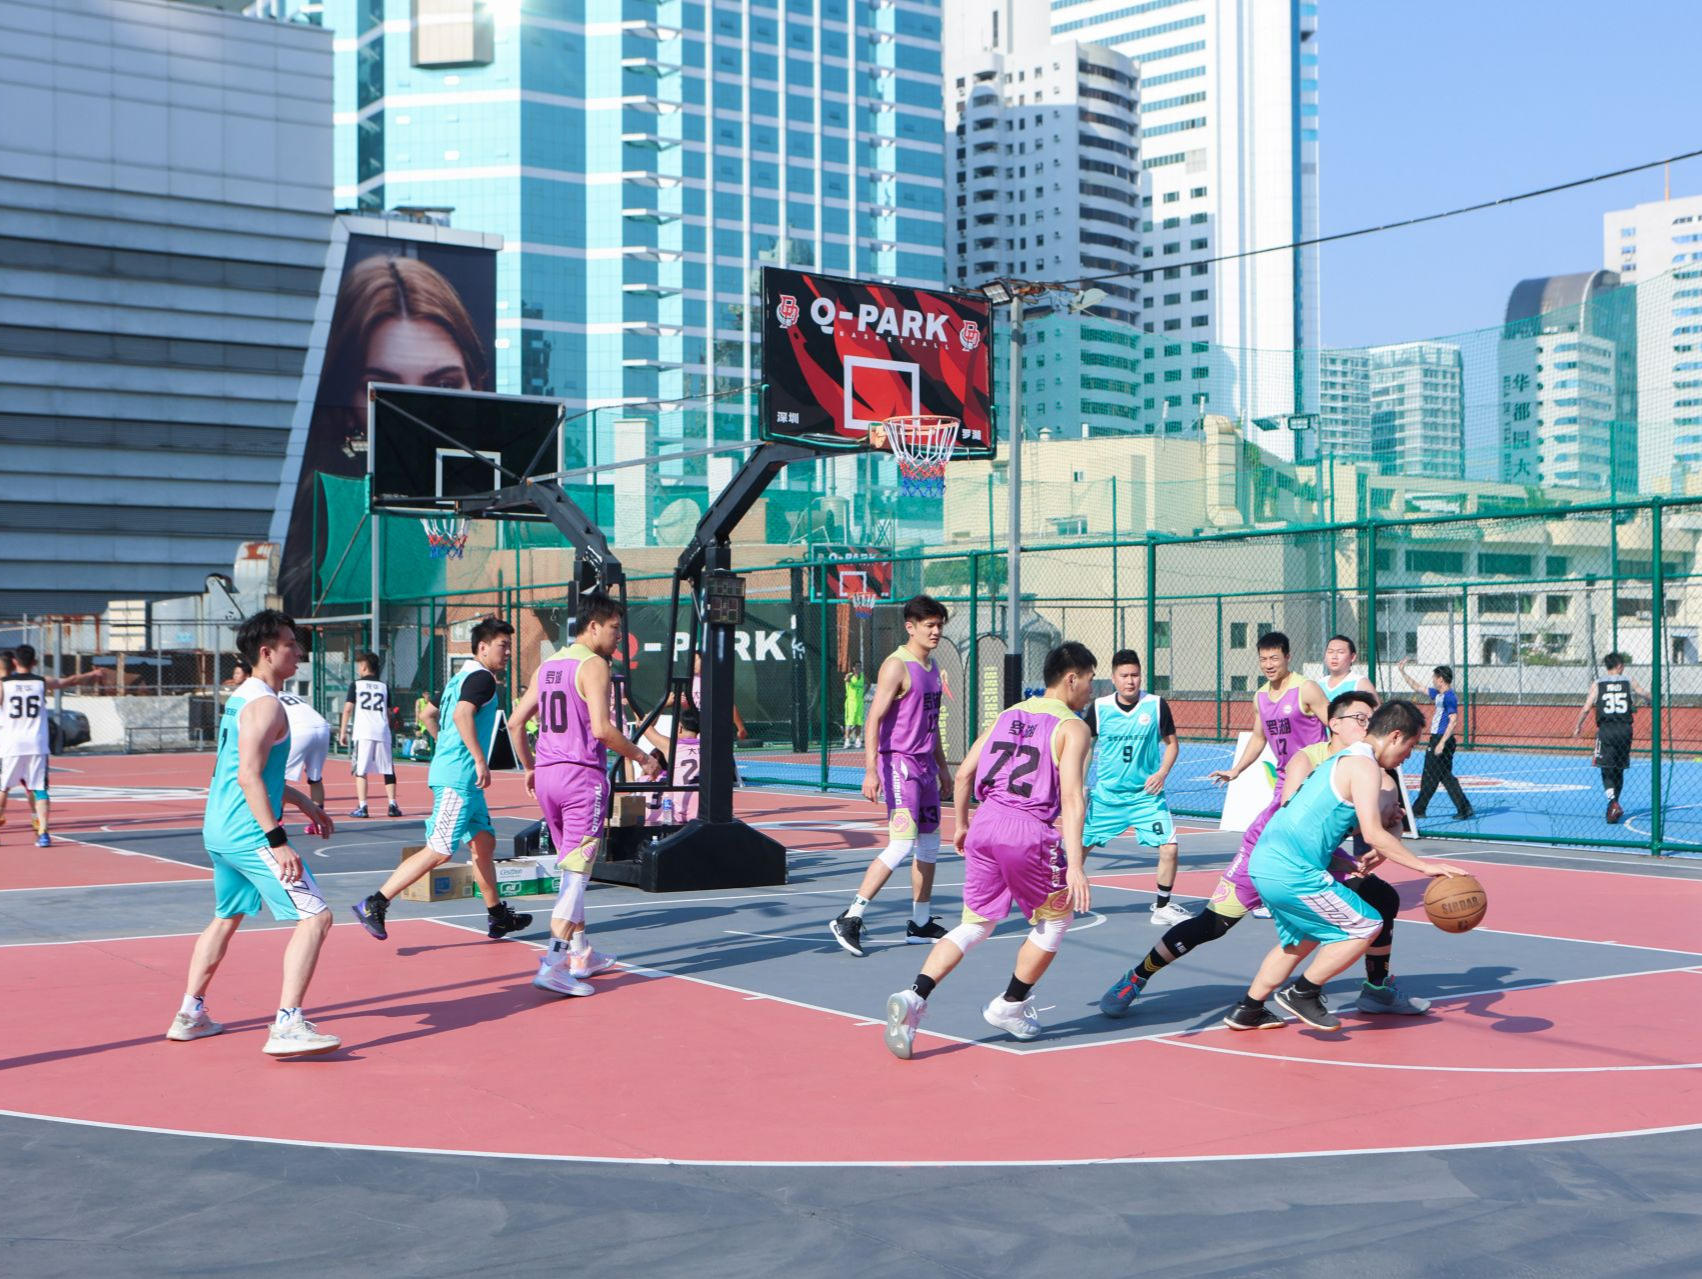 13支篮球队比拼角逐展现青春风采 2022深港青年同心杯篮球友谊赛落幕 